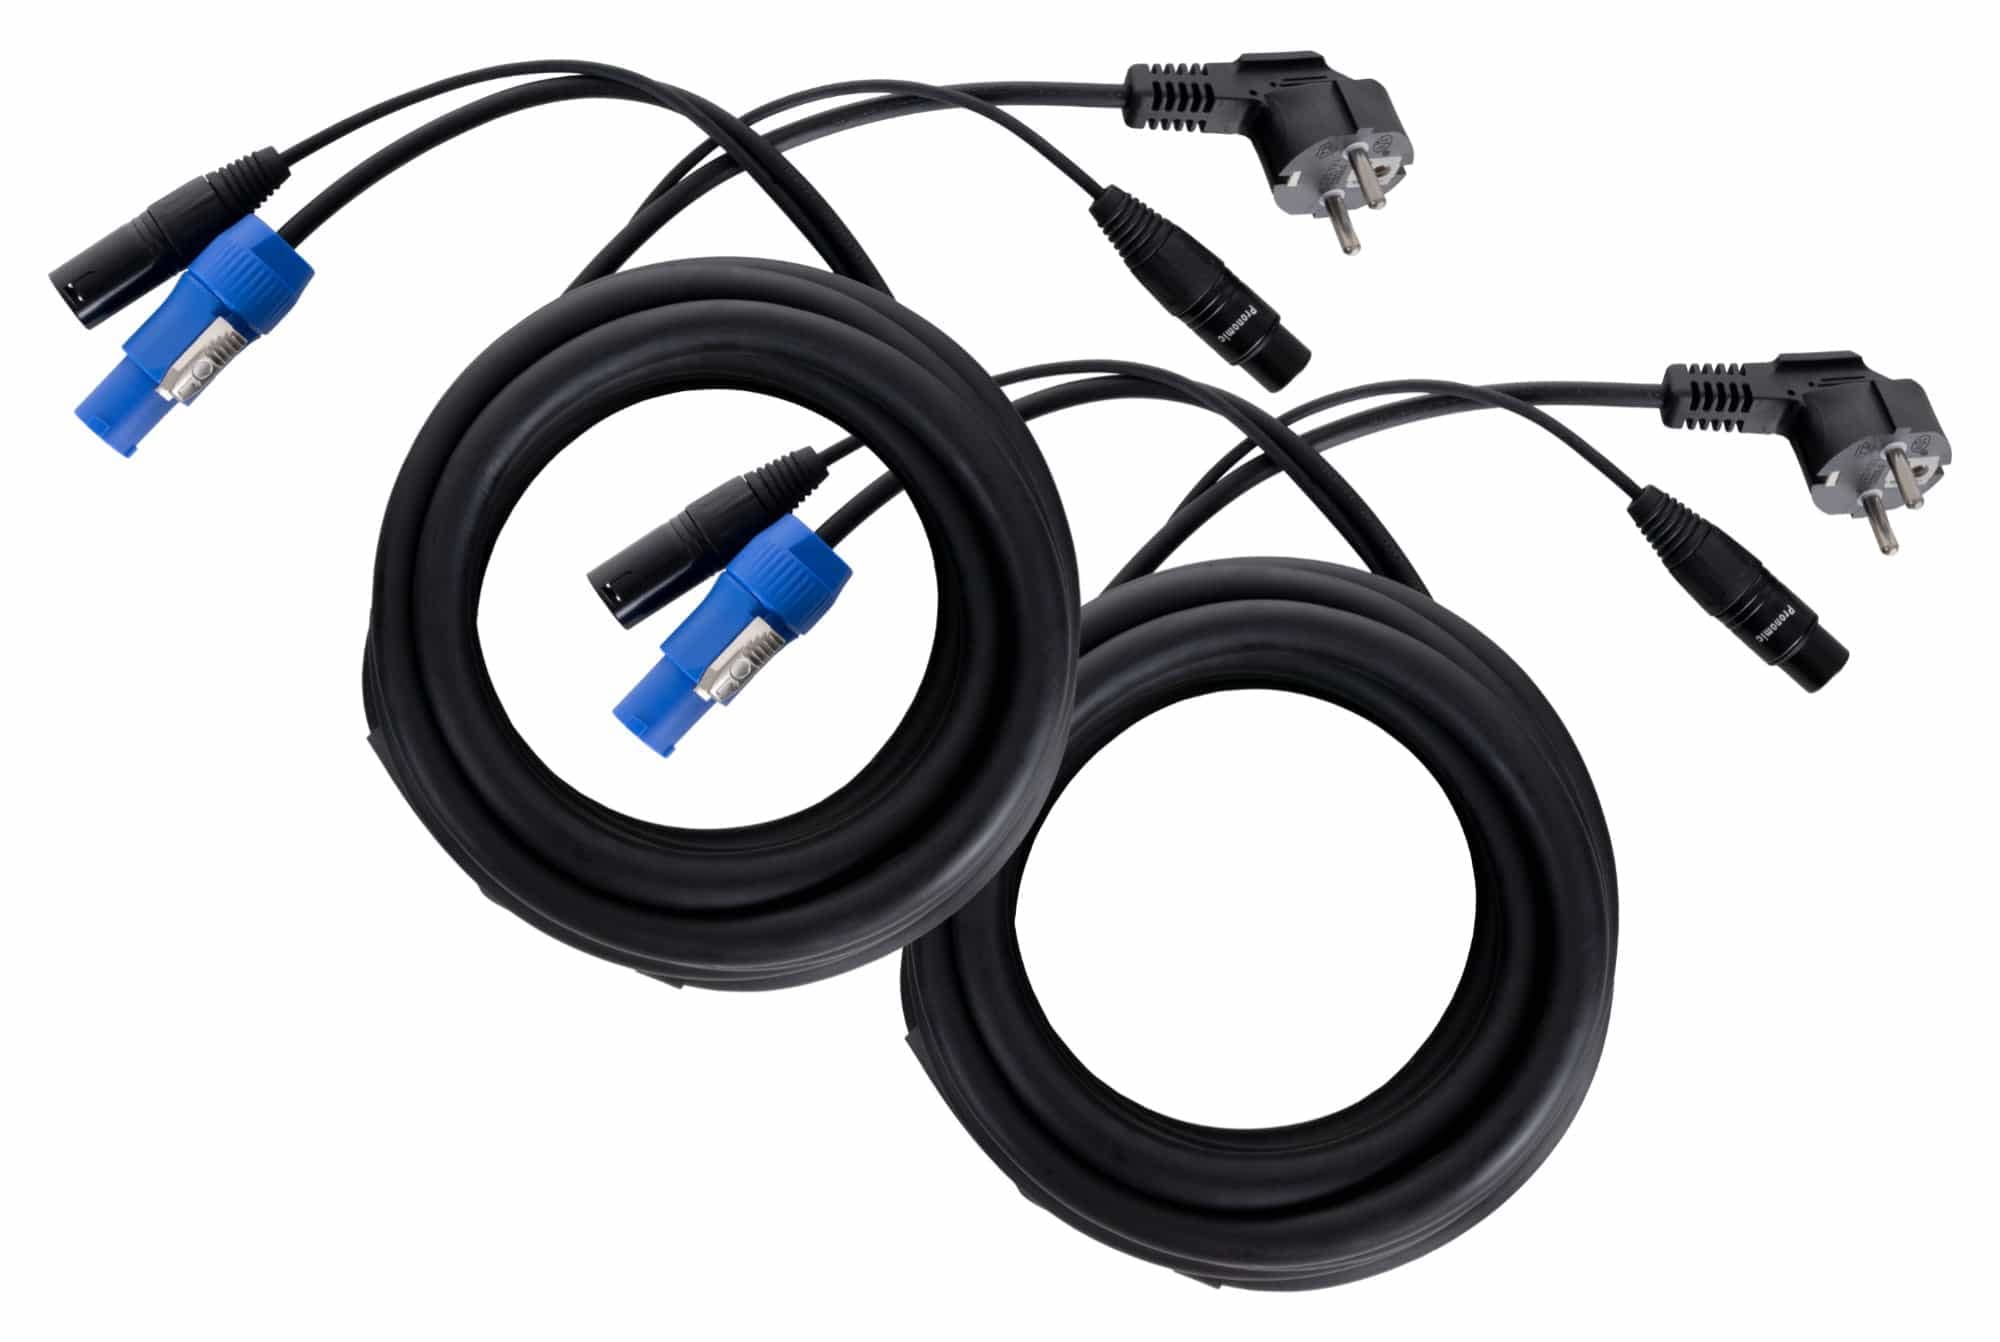 Pronomic Stage EUPPX-2.5 Hybridkabel Euro/Powerplug/XLR 2x Set - Länge: 2,5 m - Kombi-Kabel für Aktiv-Lautsprecher - Stromversorgung und Signal in einem - Powercon/Schuko-kompatibel - schwarz